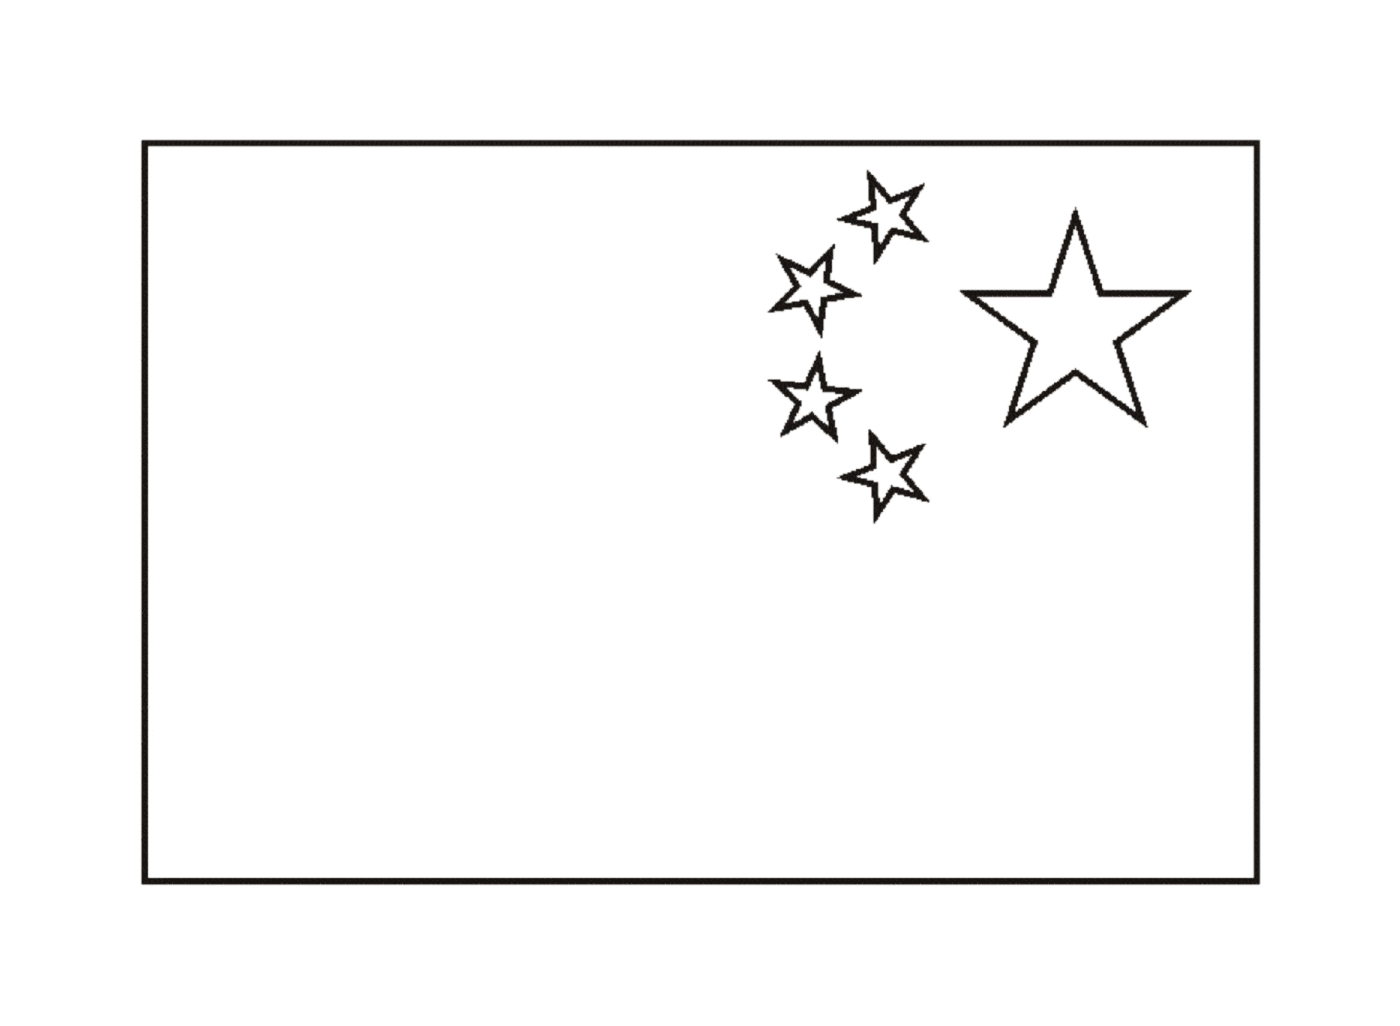  Китайский флаг 